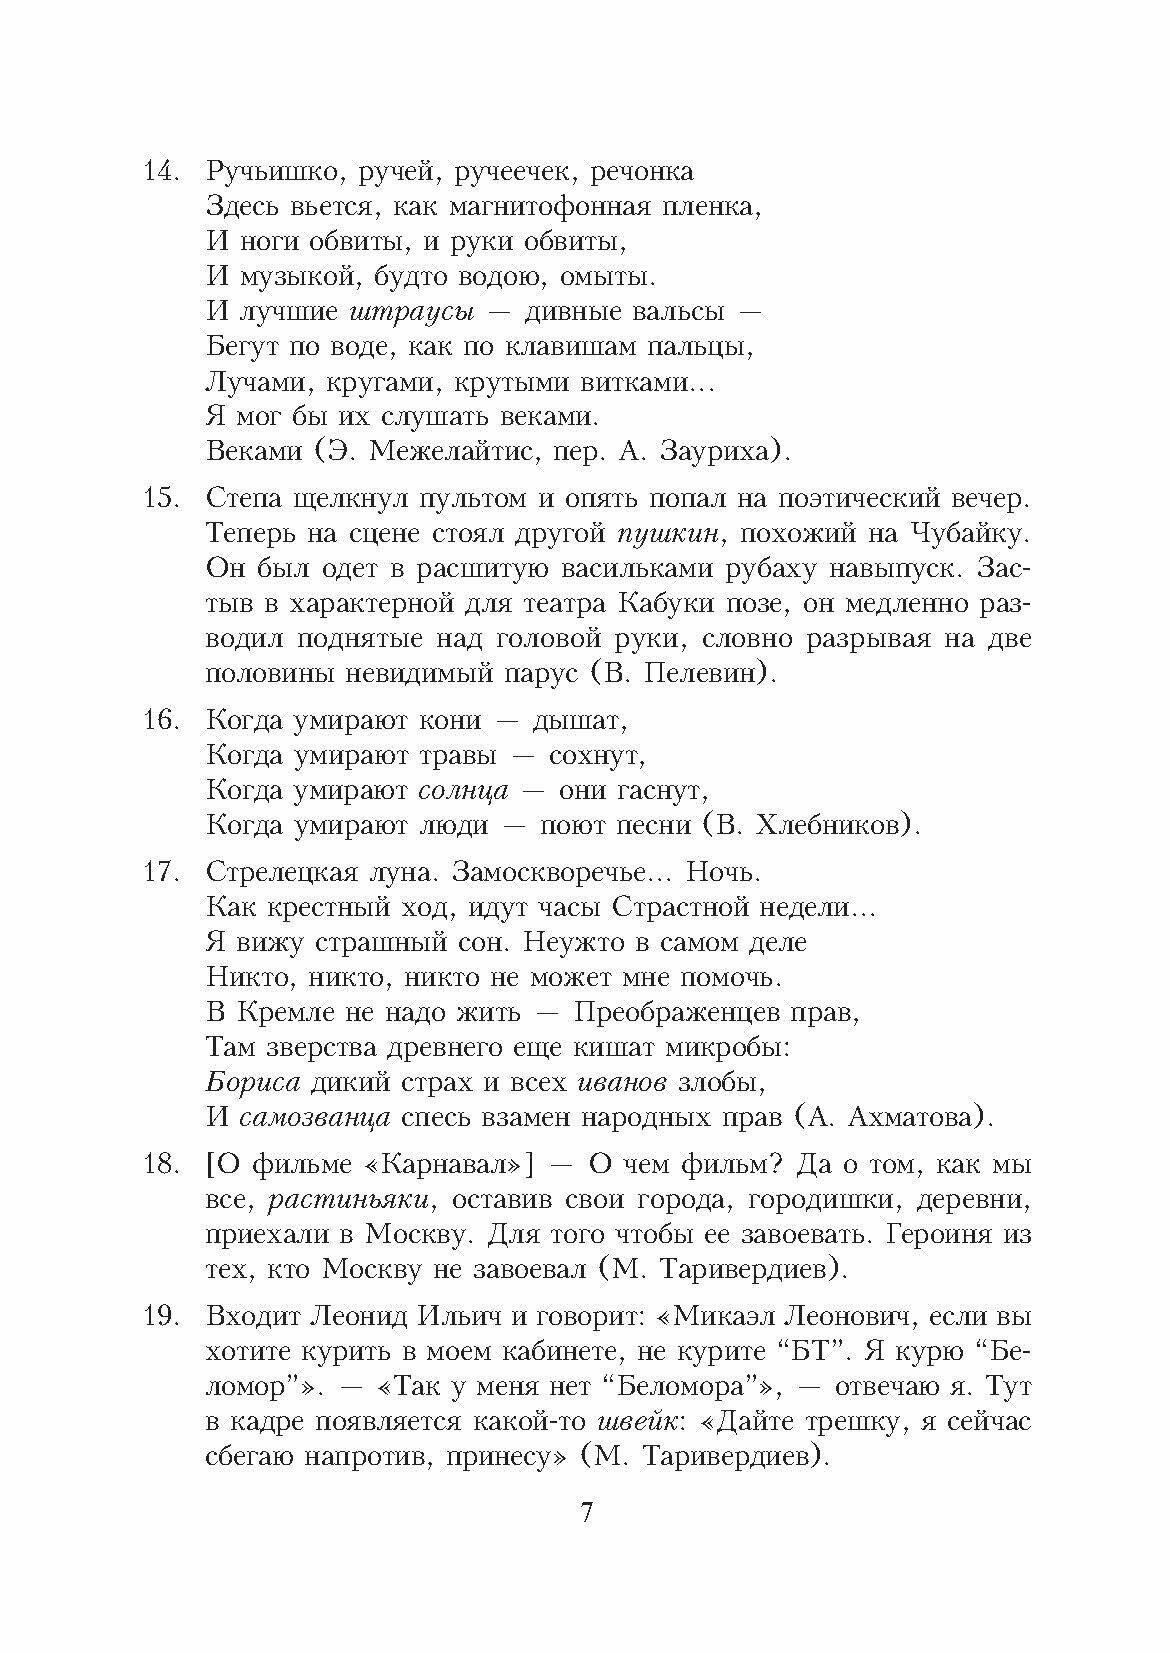 Морфология современного русского языка. Практикум - фото №7